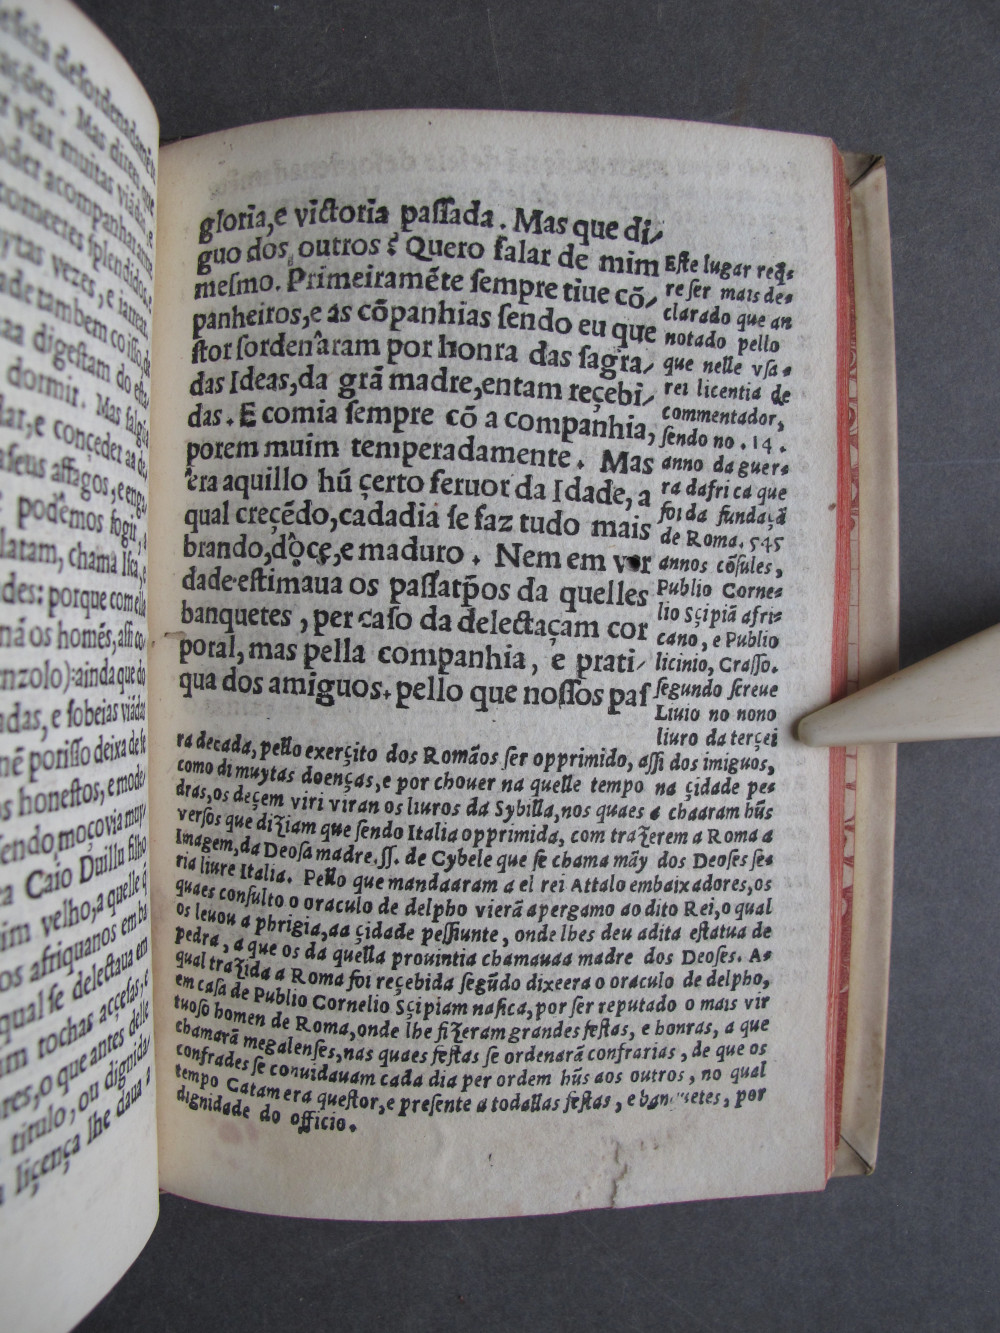 Folio C7 recto